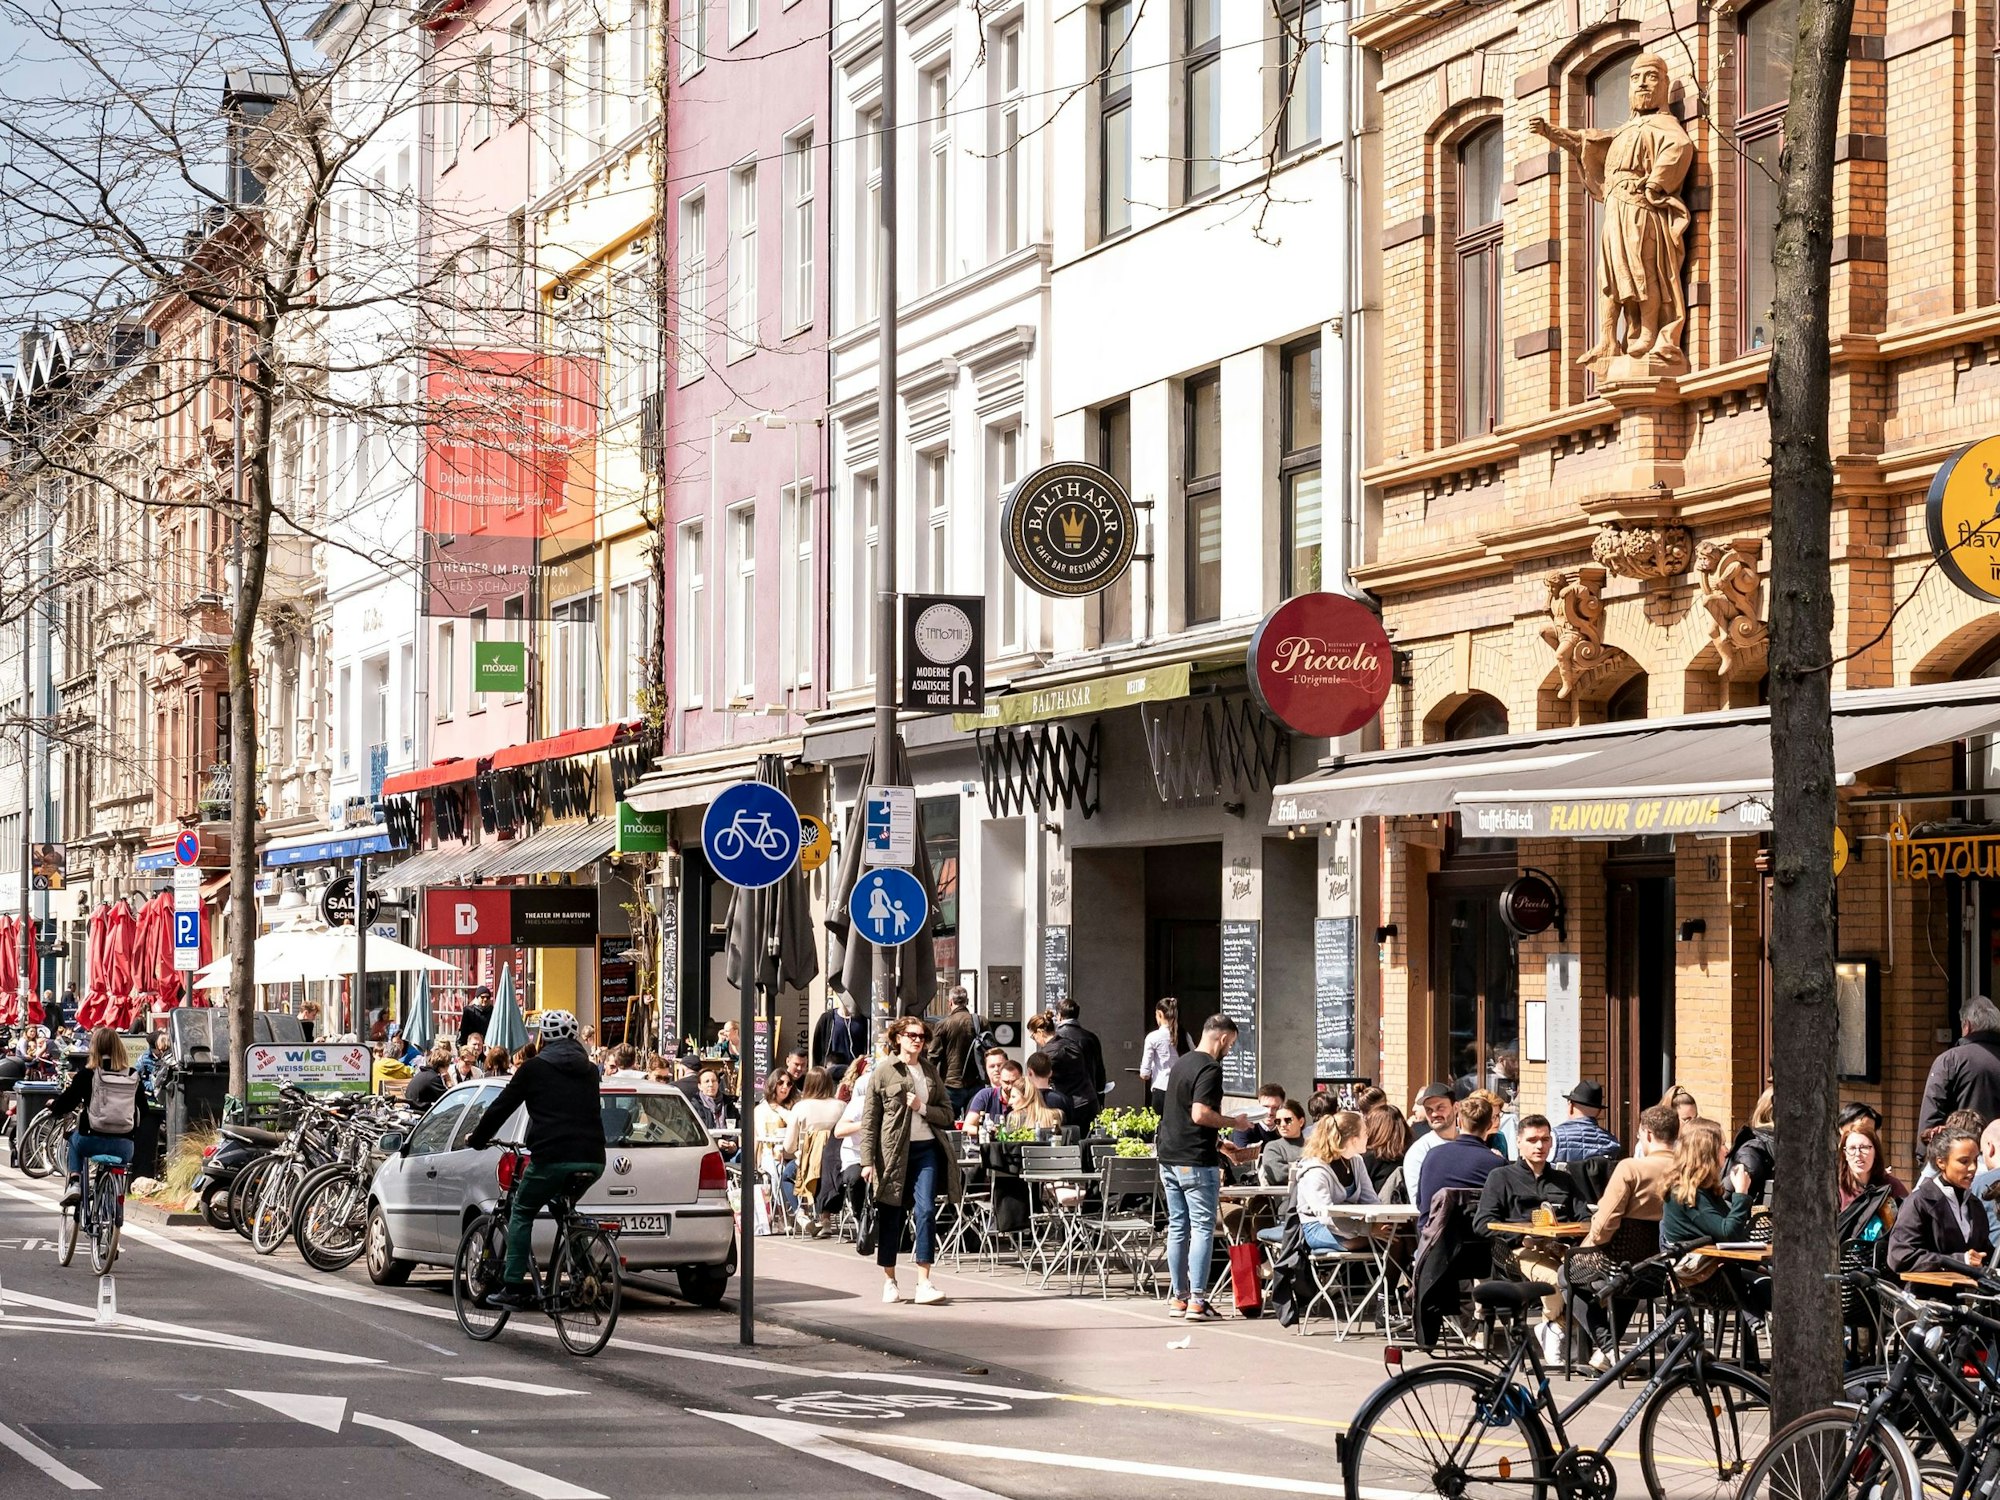 Menschen sitzen in Cafés am Straßenrand in Köln.